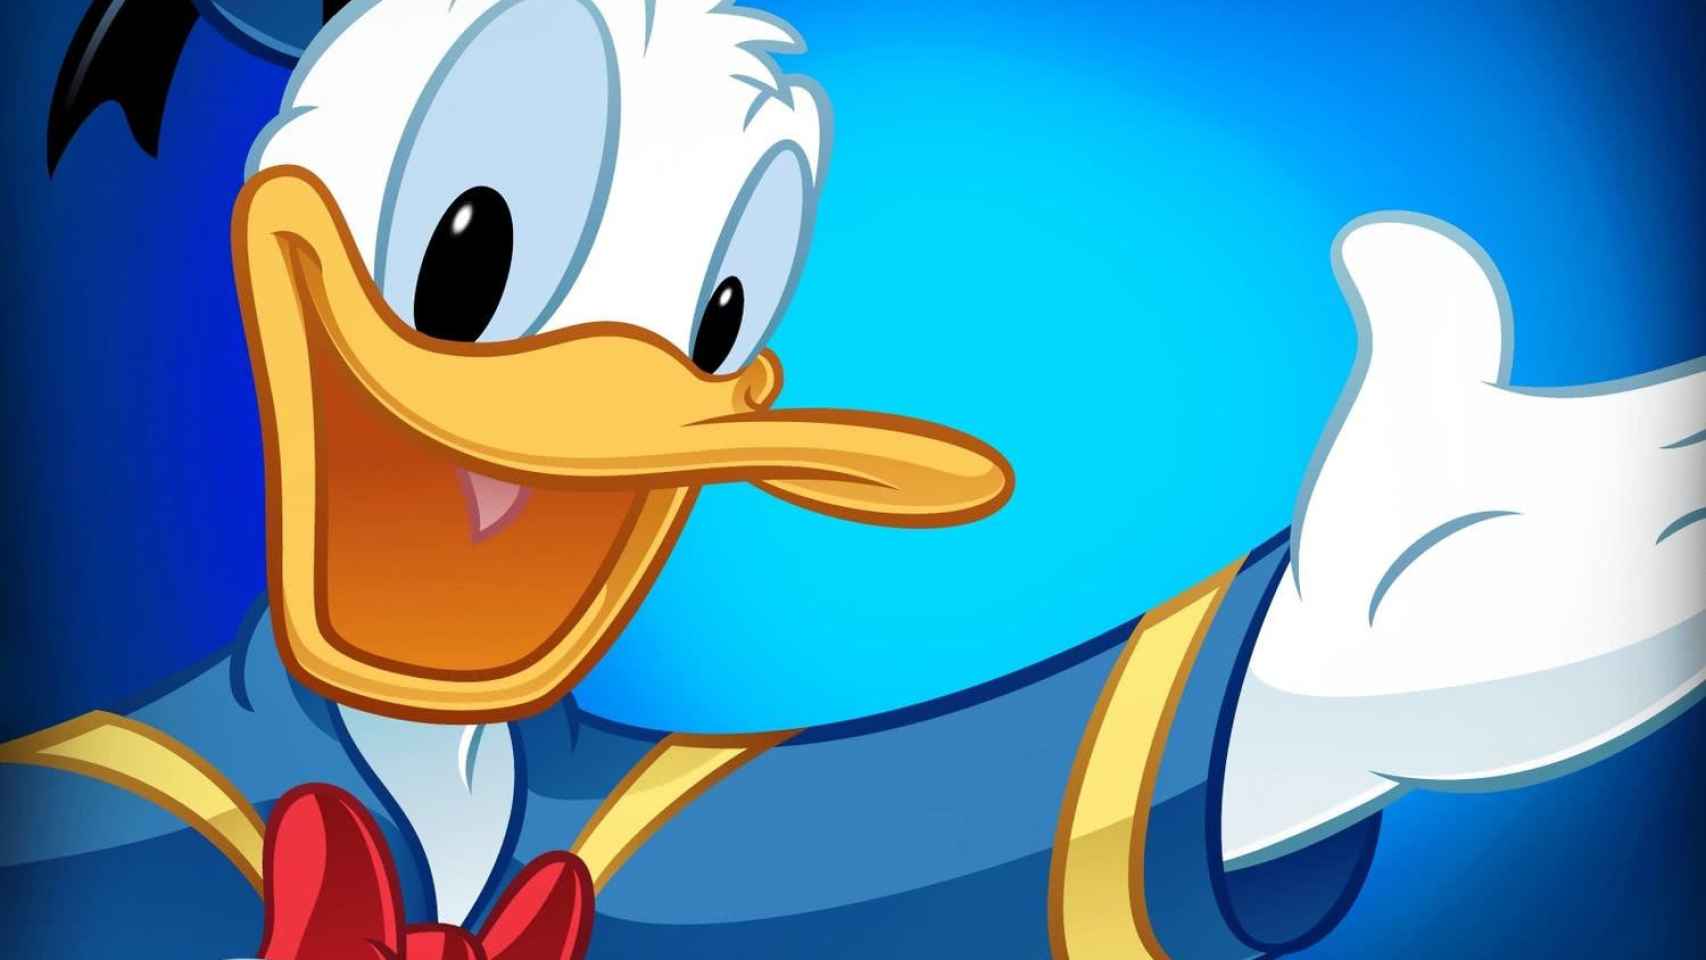 El Pato Donald, personaje creado por Walt Disney.